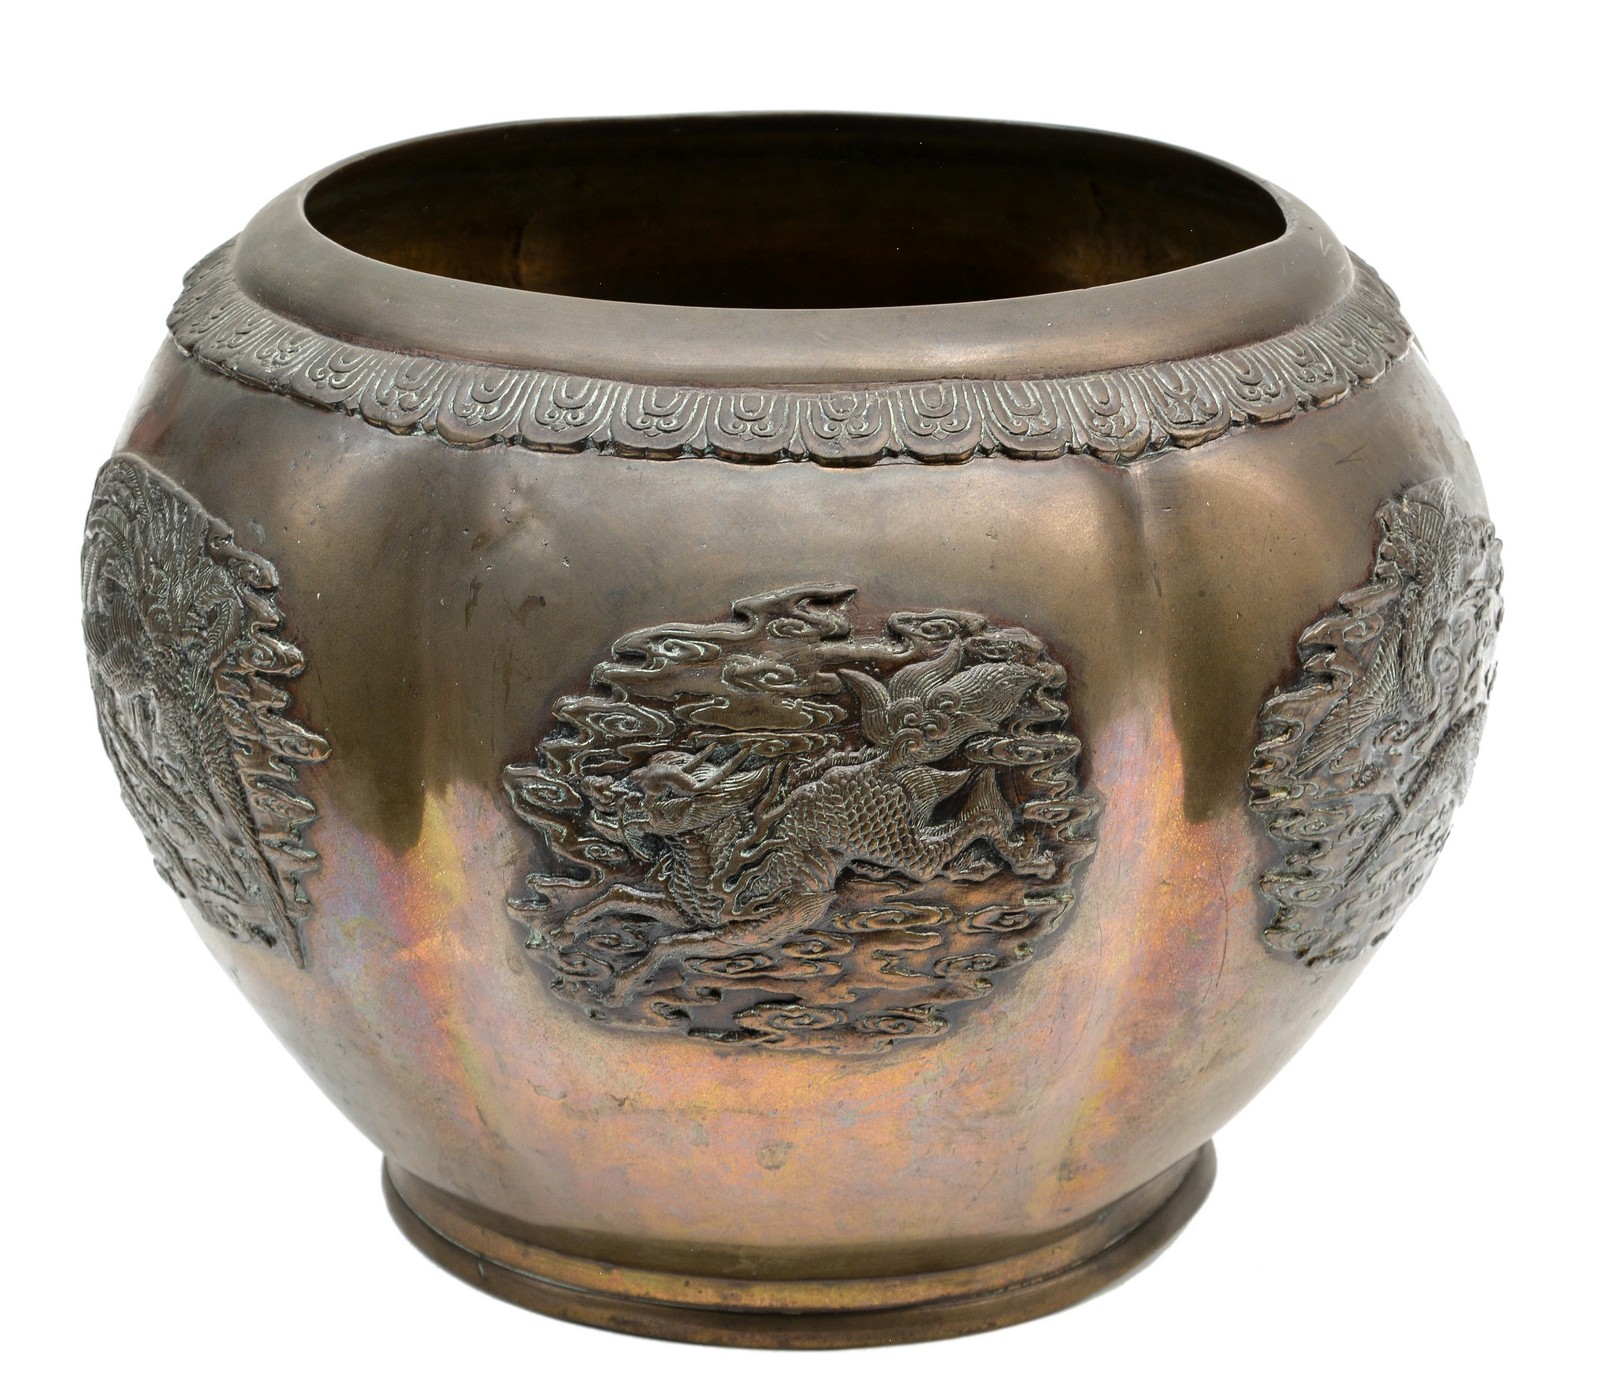 An Oriental brass flowerpot, H 23 - Diameter 32 cm